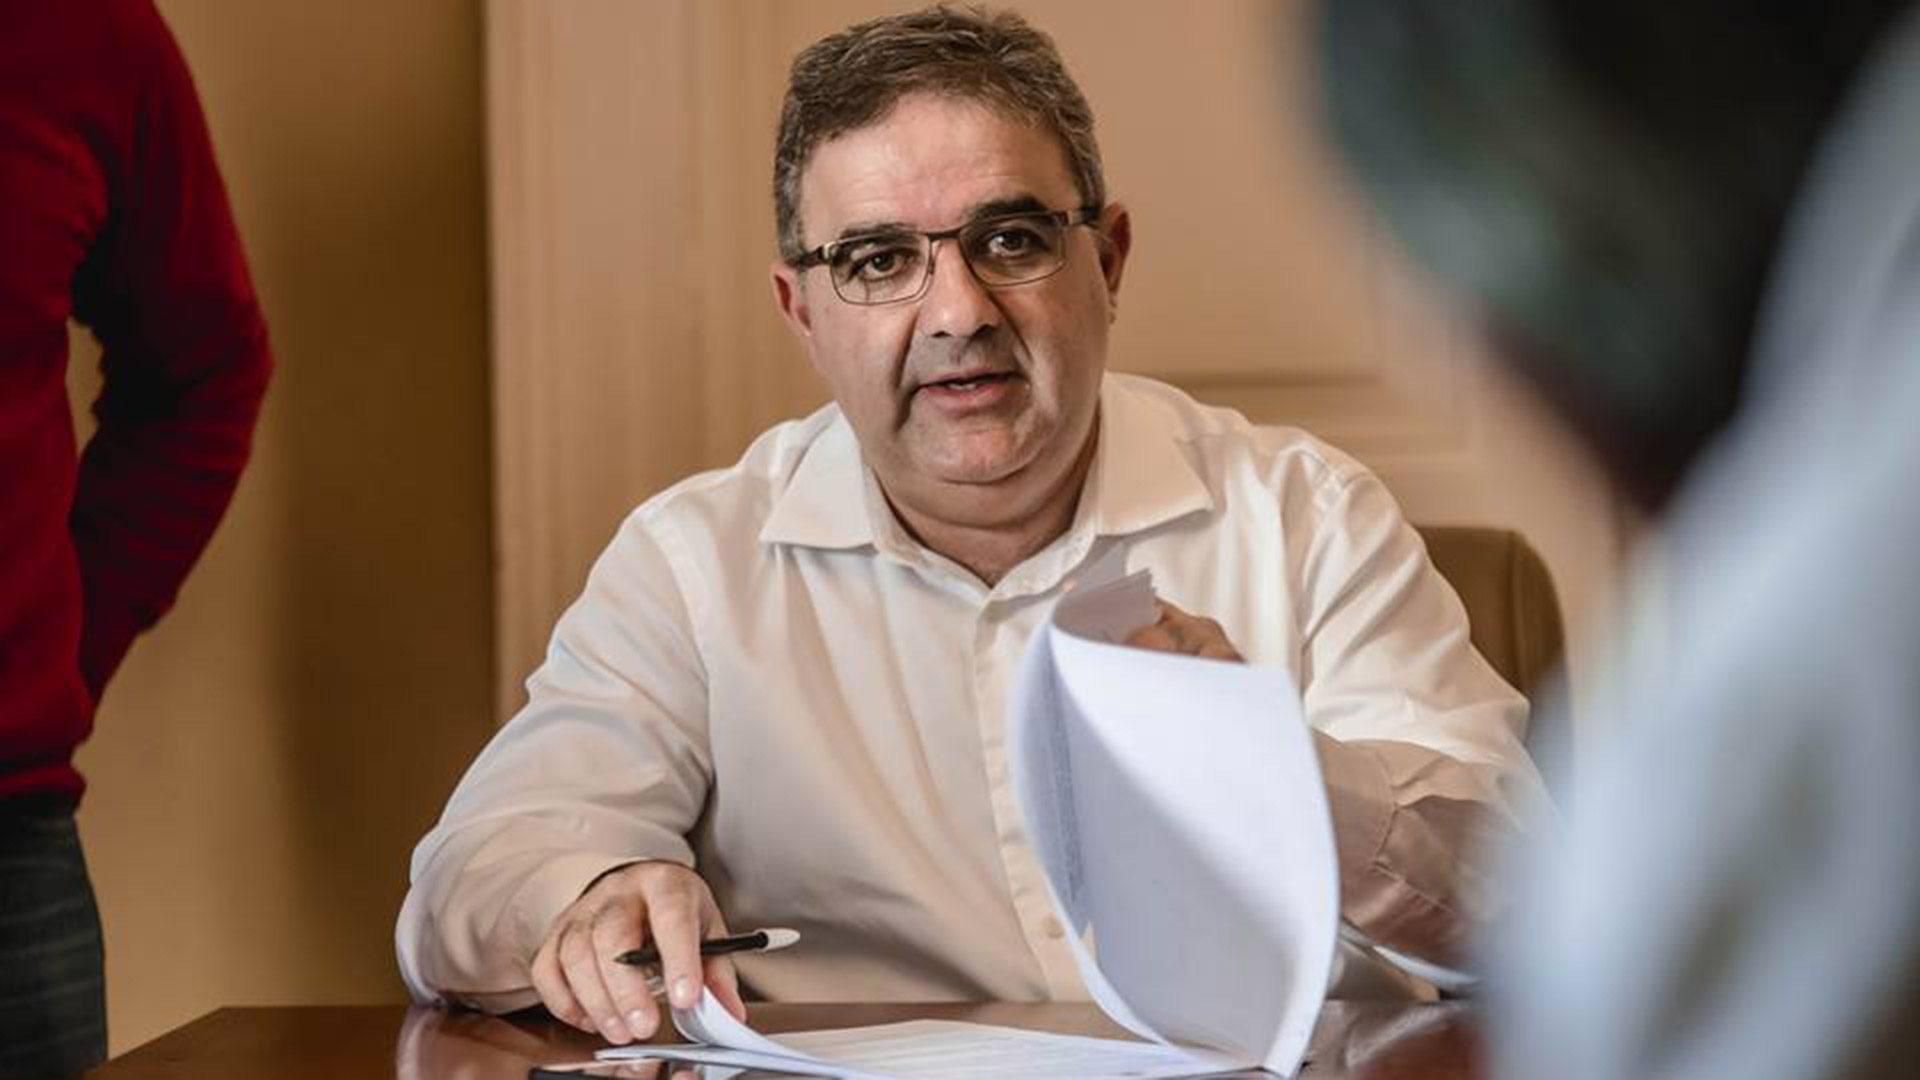 Raúl Jalil, gobernador de Catamarca: “La pandemia tiene que ser una oportunidad para reactivar las economías regionales y tener menos importaciones” - Infobae